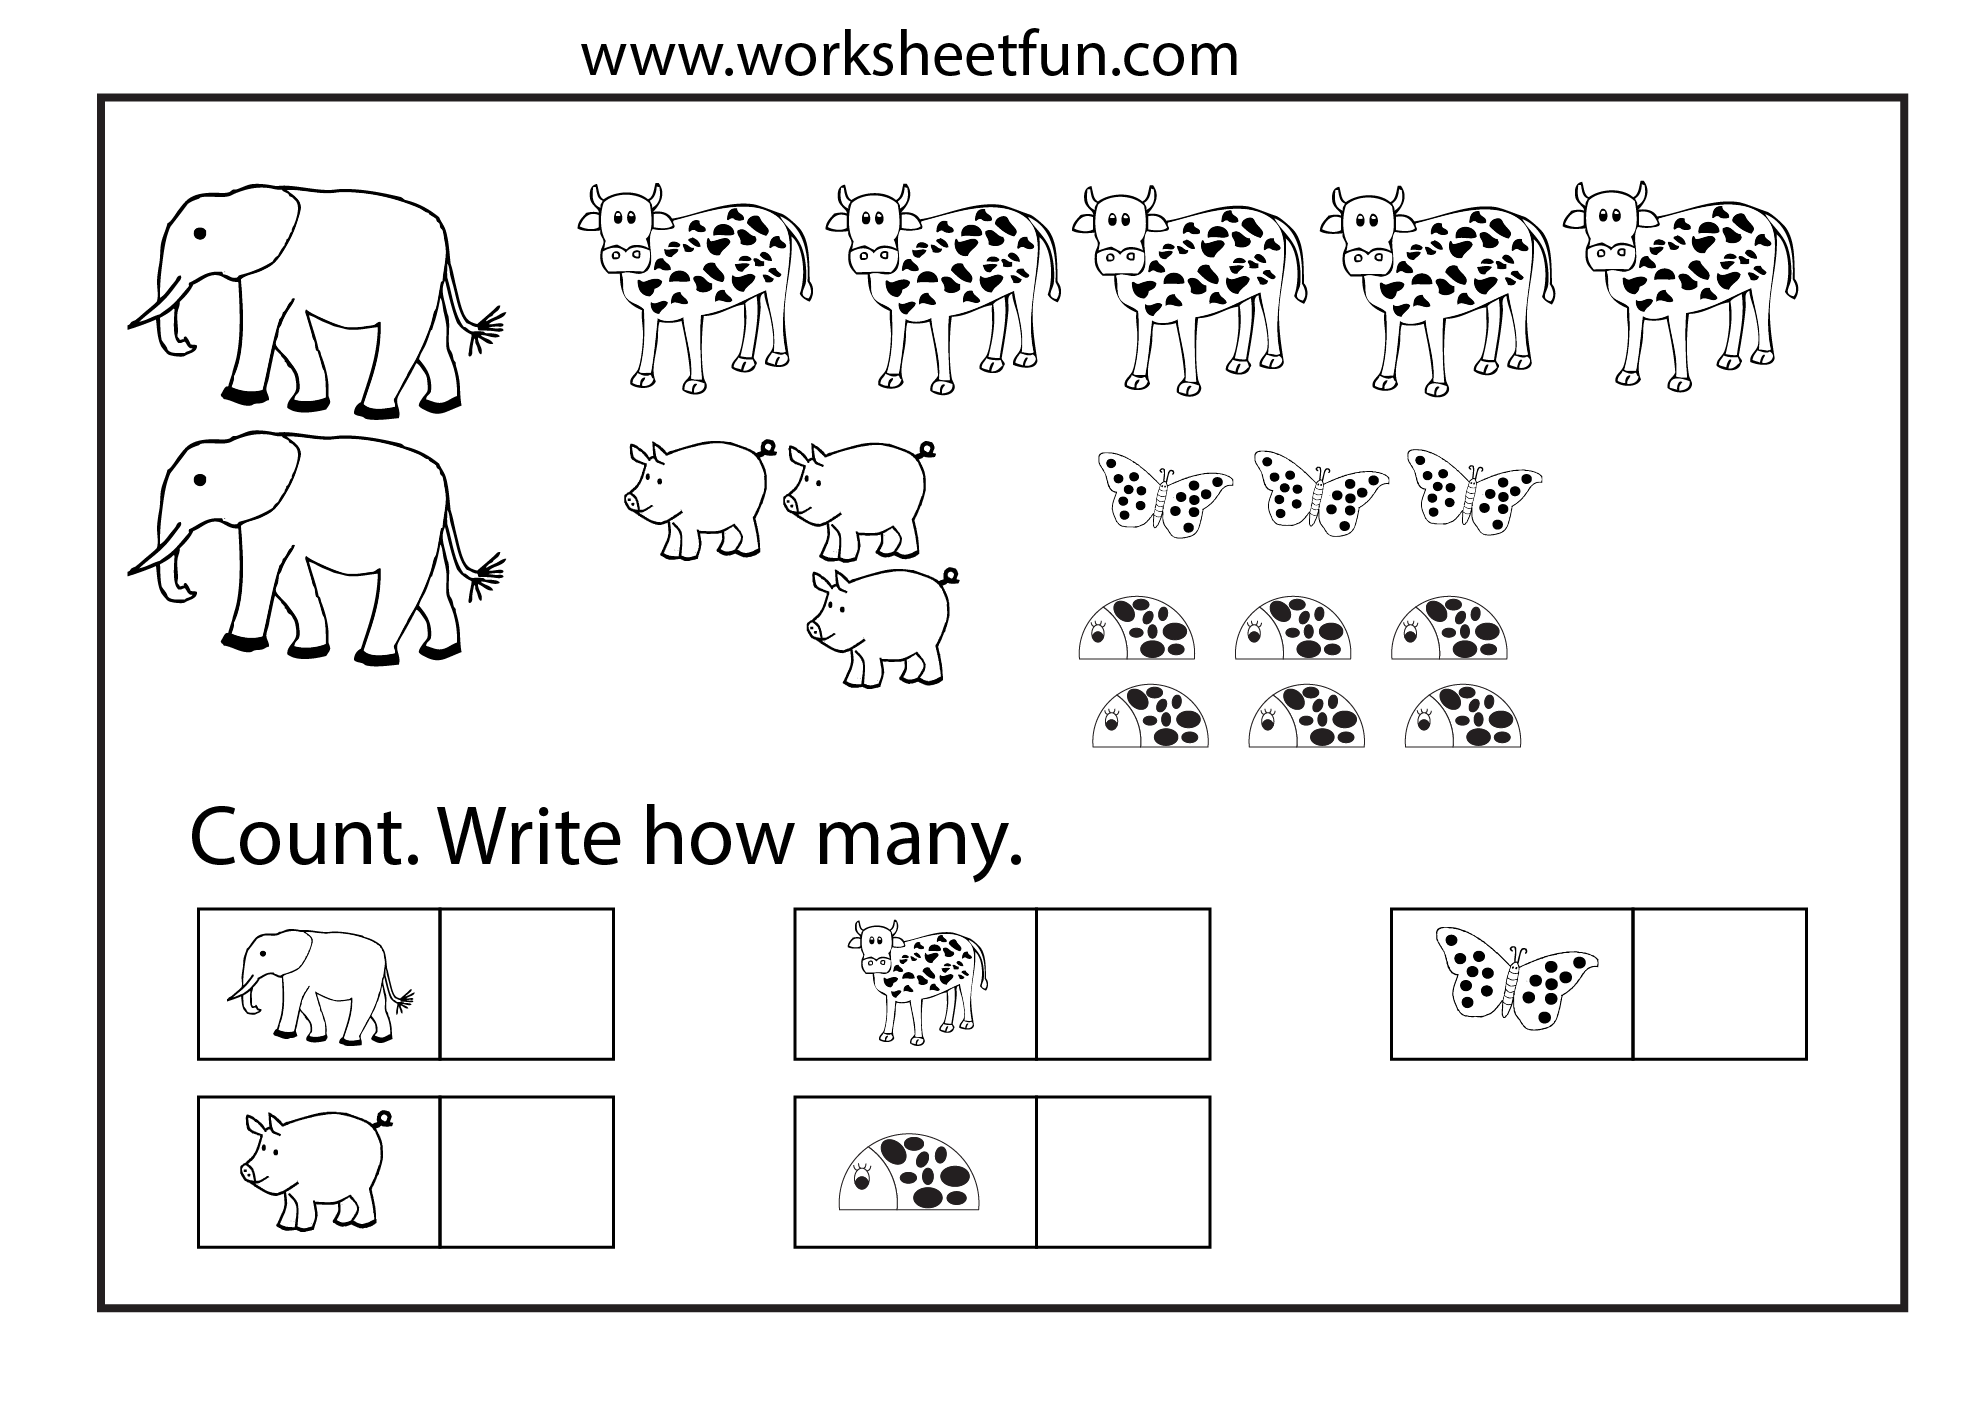 counting-worksheets-7-worksheets-free-printable-worksheets